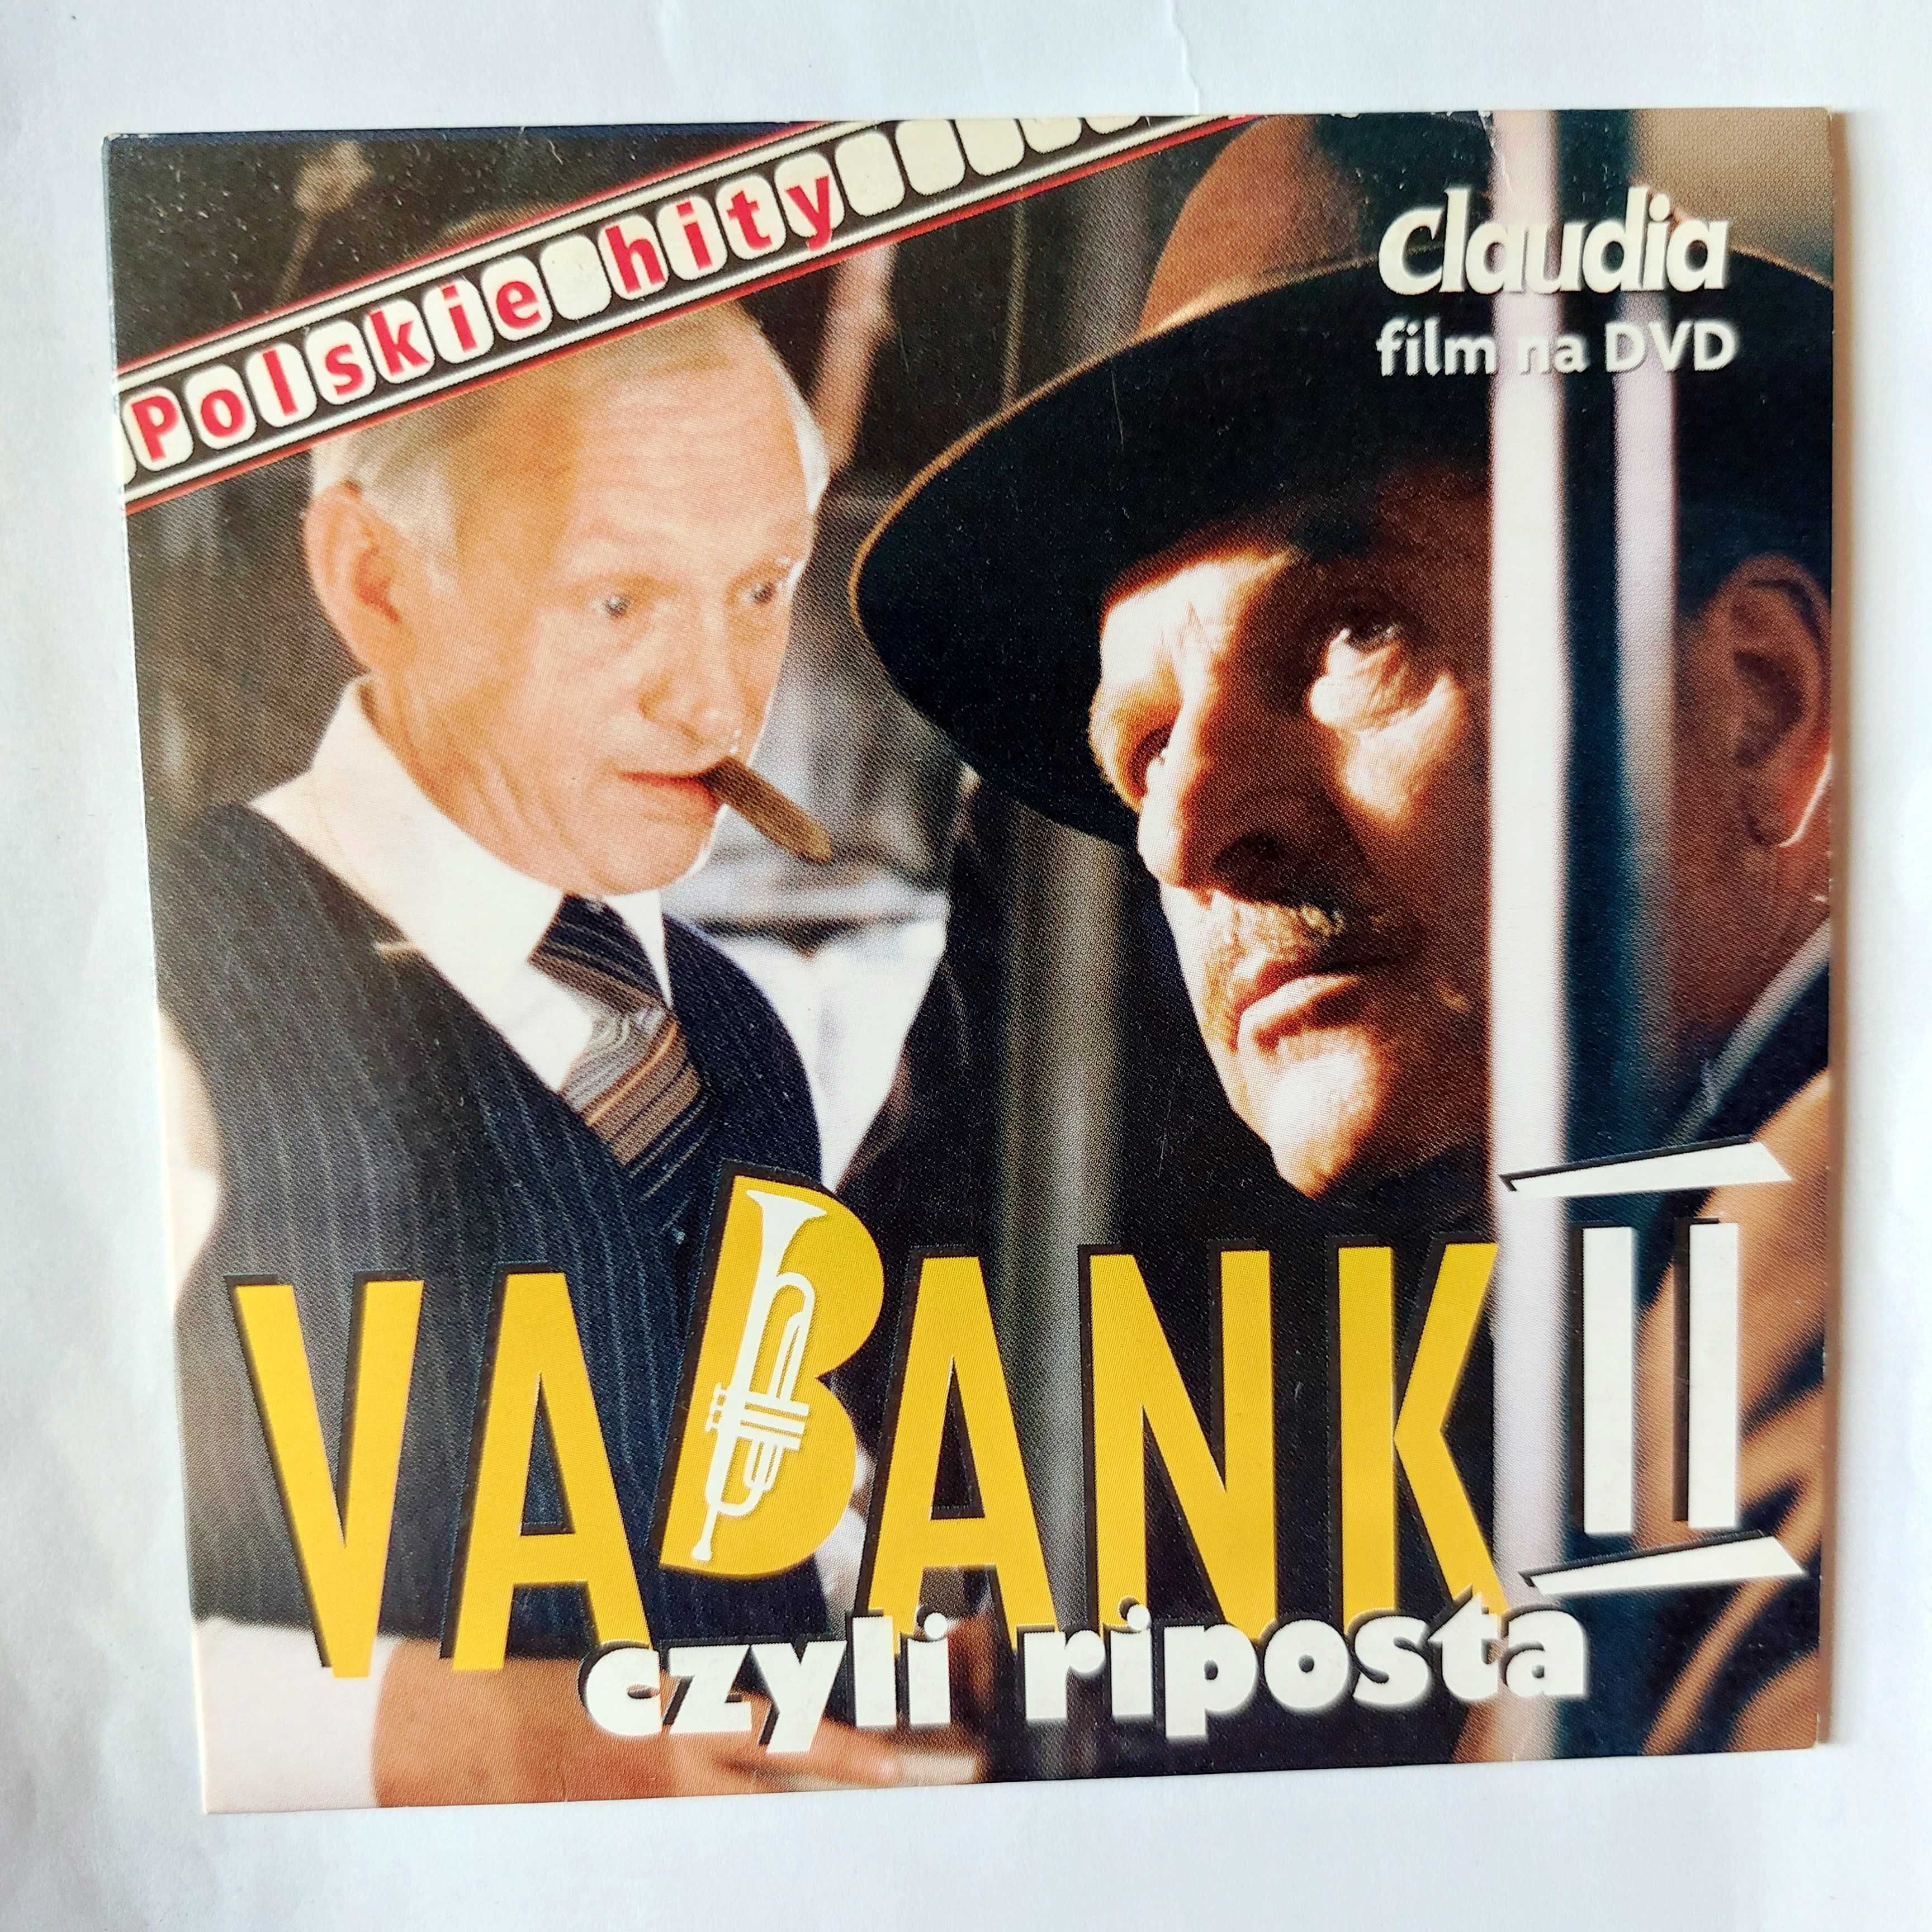 VABANK II czyli riposta | kultowy polski film na DVD